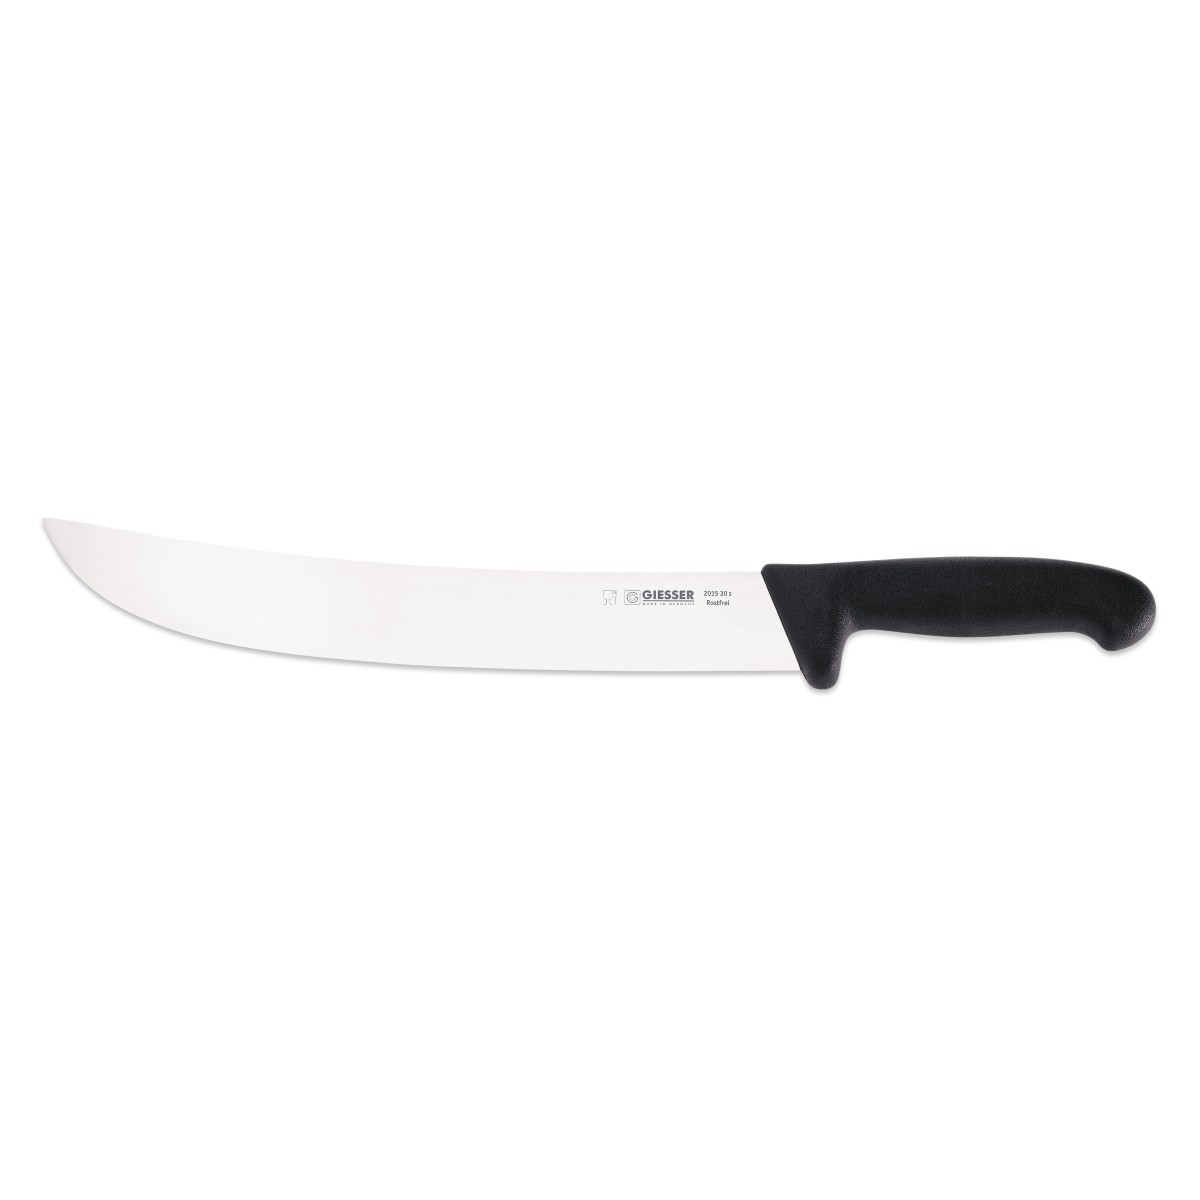 KNIFE GIESSER STEAK CURVED 30cm BLK